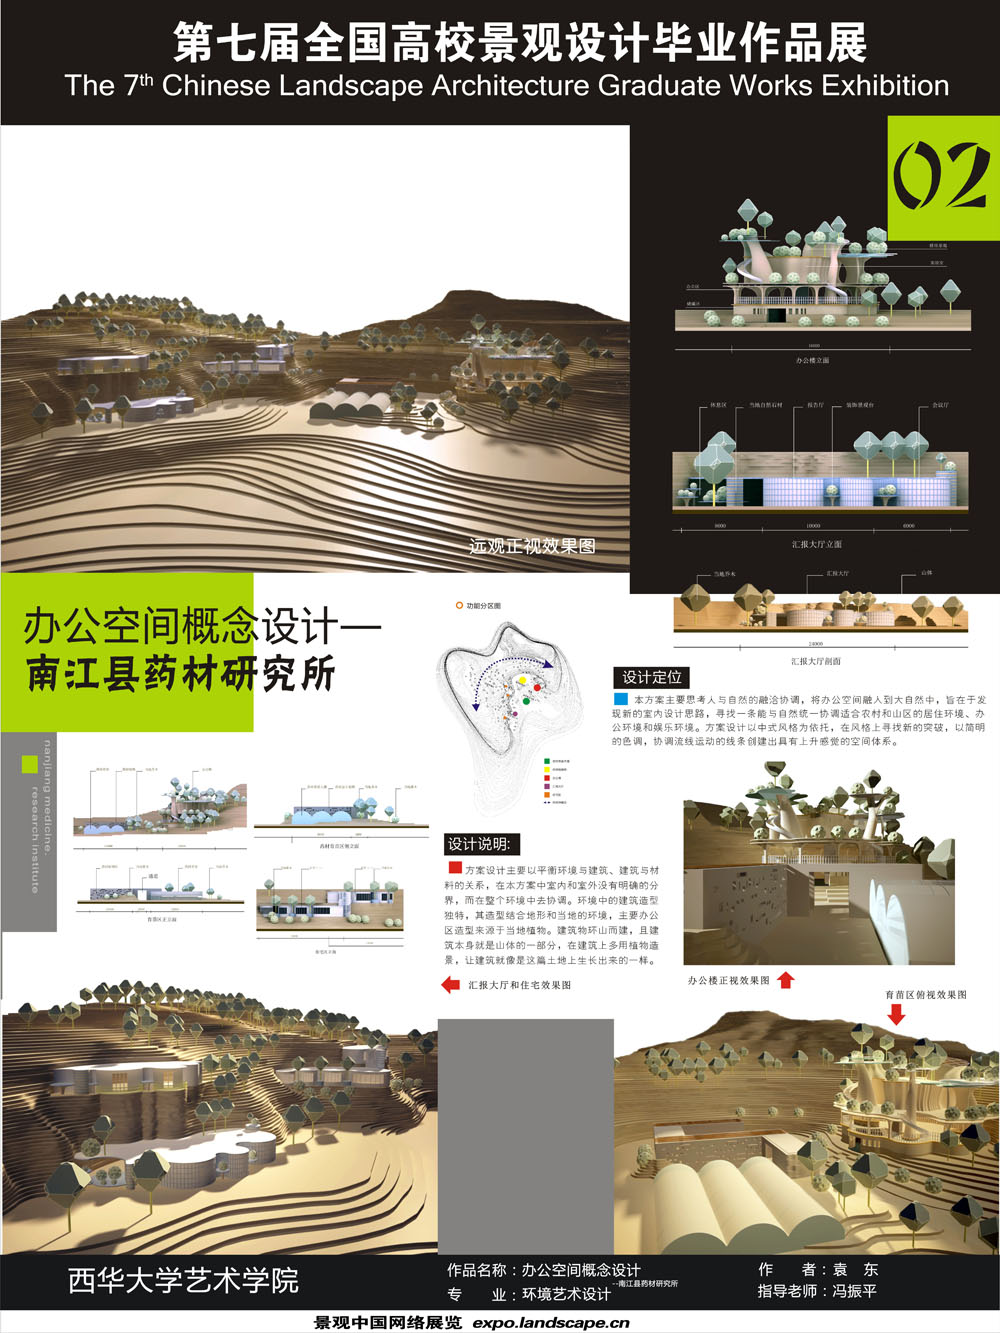 办公空间概念设计——南江县药材研究所-2